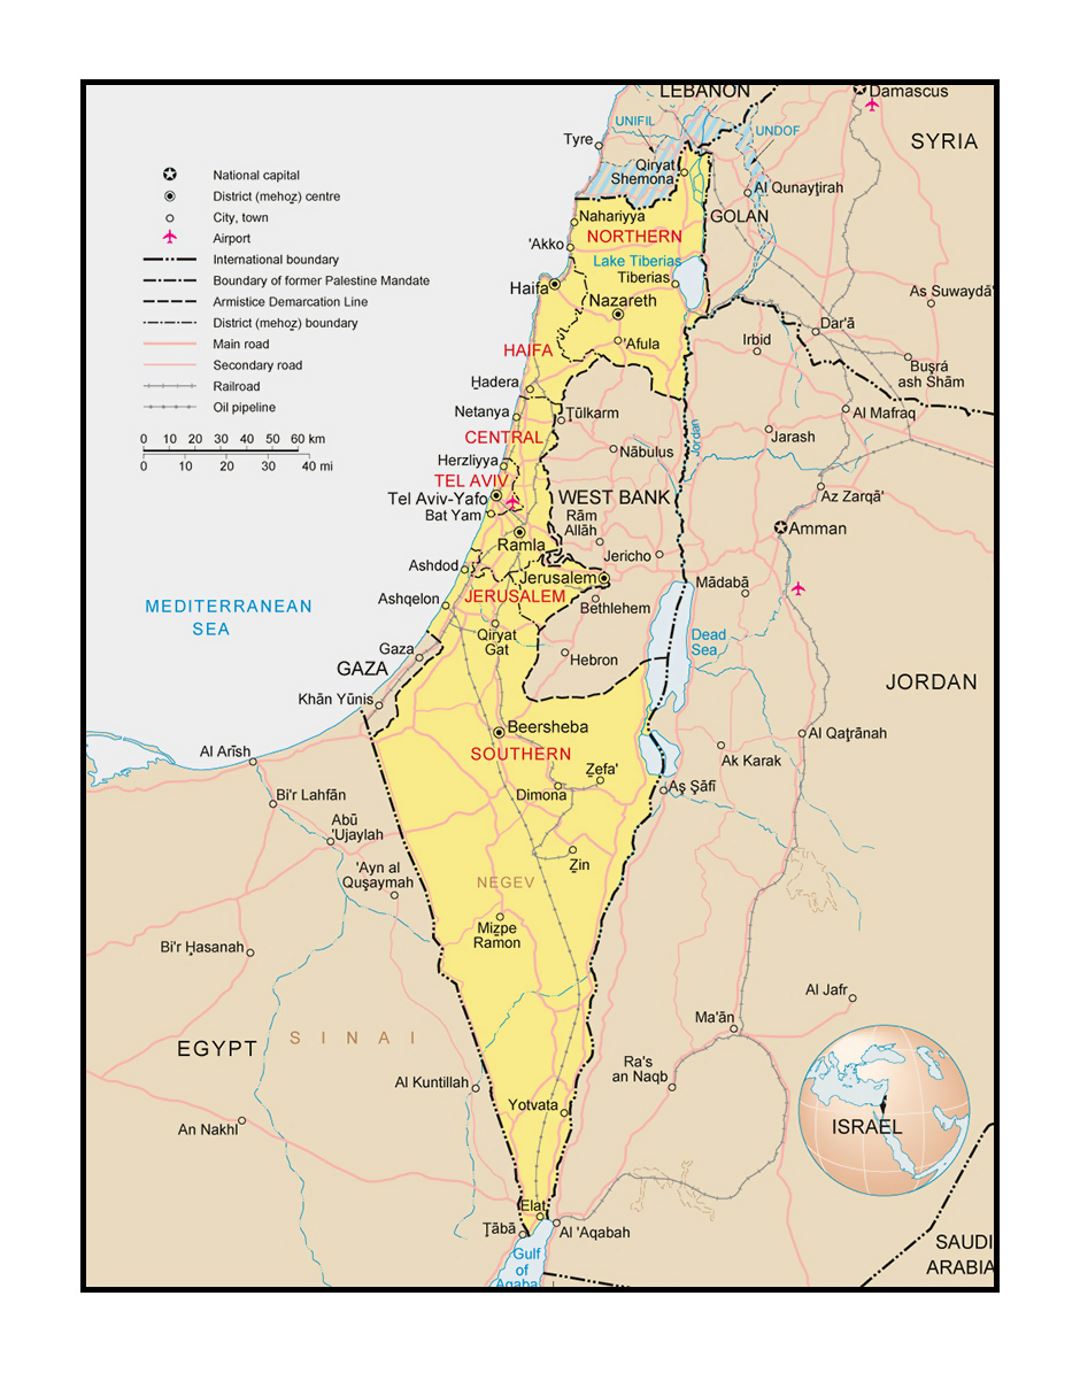 Mapa político y administrativo de Israel con carreteras, ciudades, aeropuertos y otras marcas